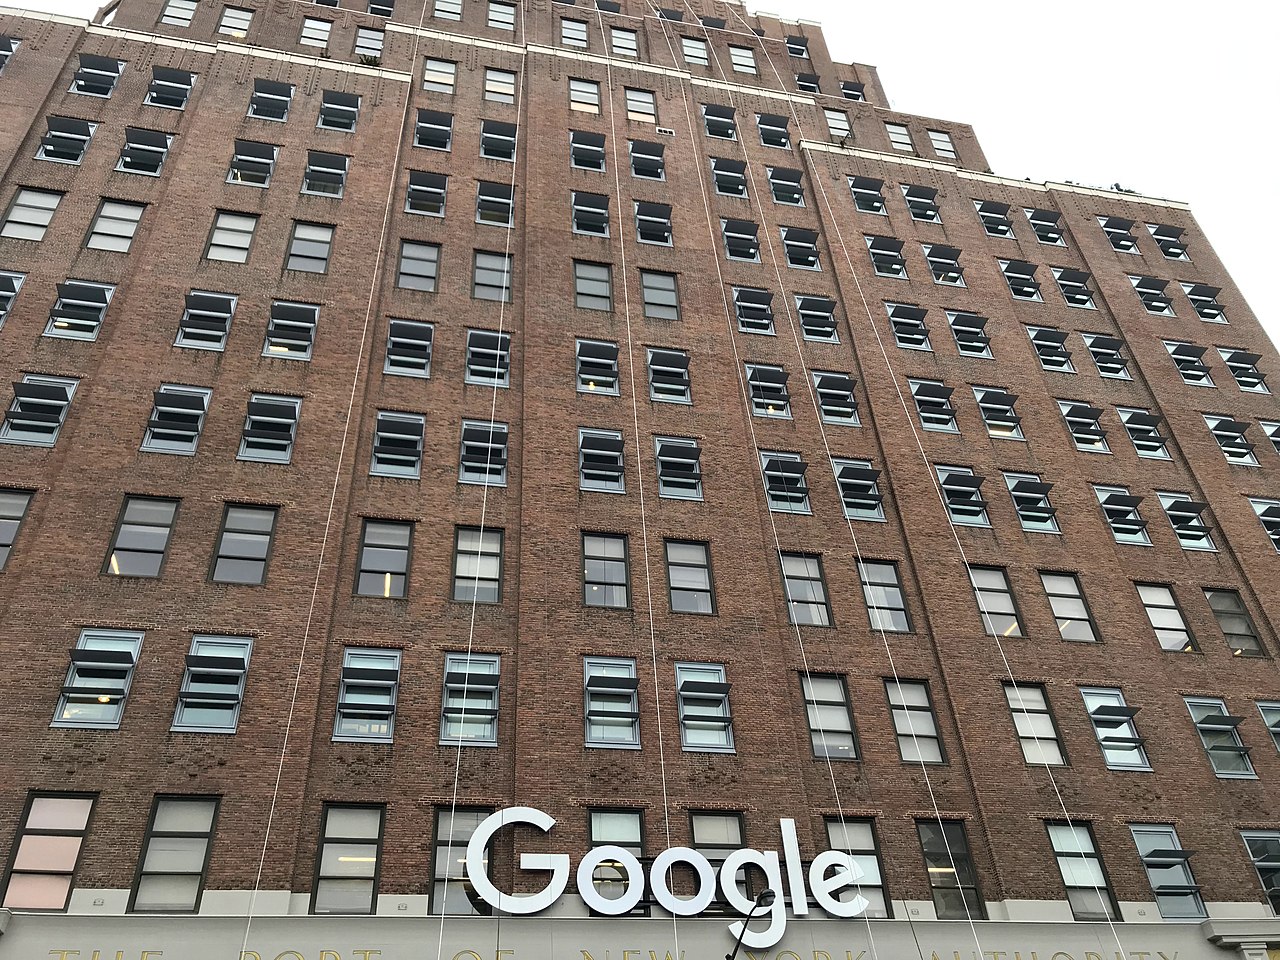 Façade of the Google building, New York City, USA